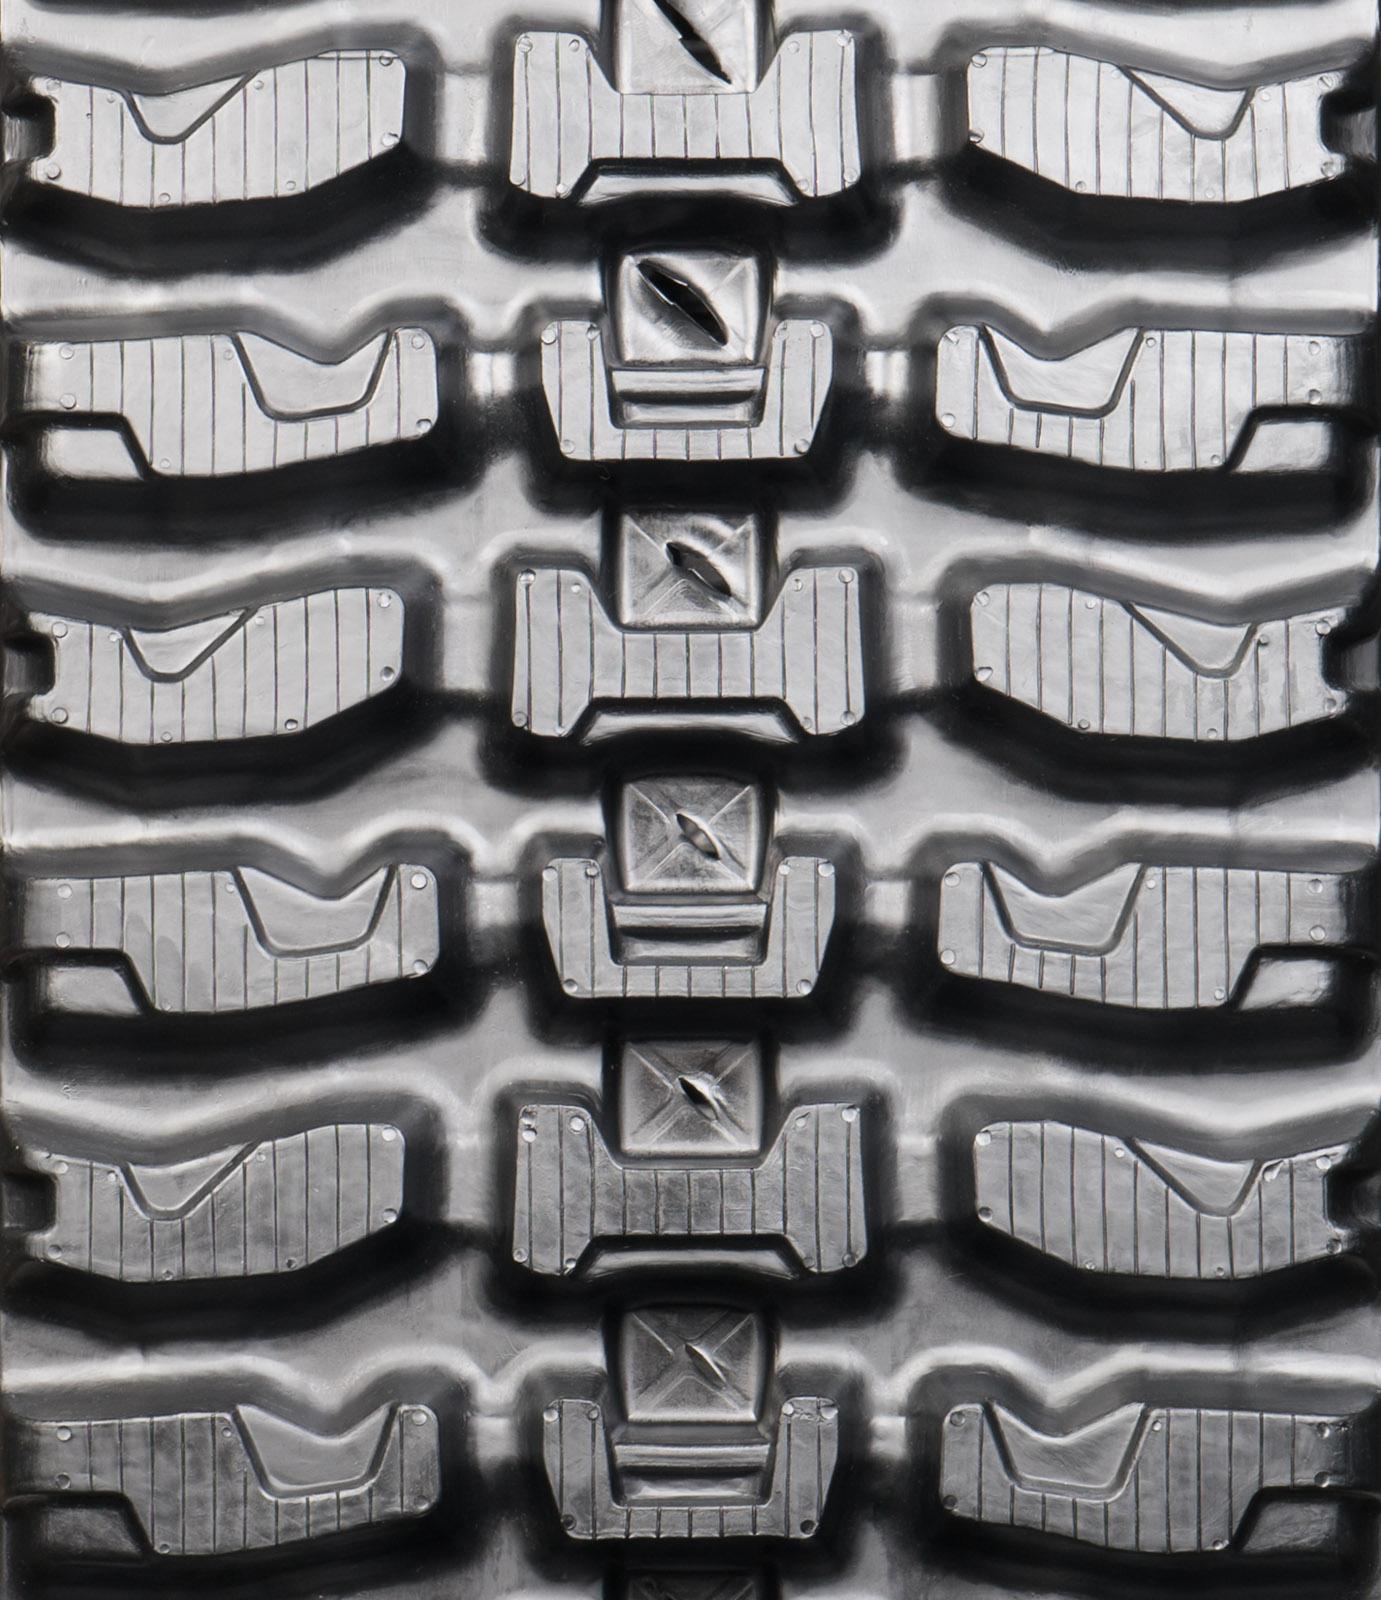 set of 2 18" heavy duty xt pattern rubber track (450x86bx58)